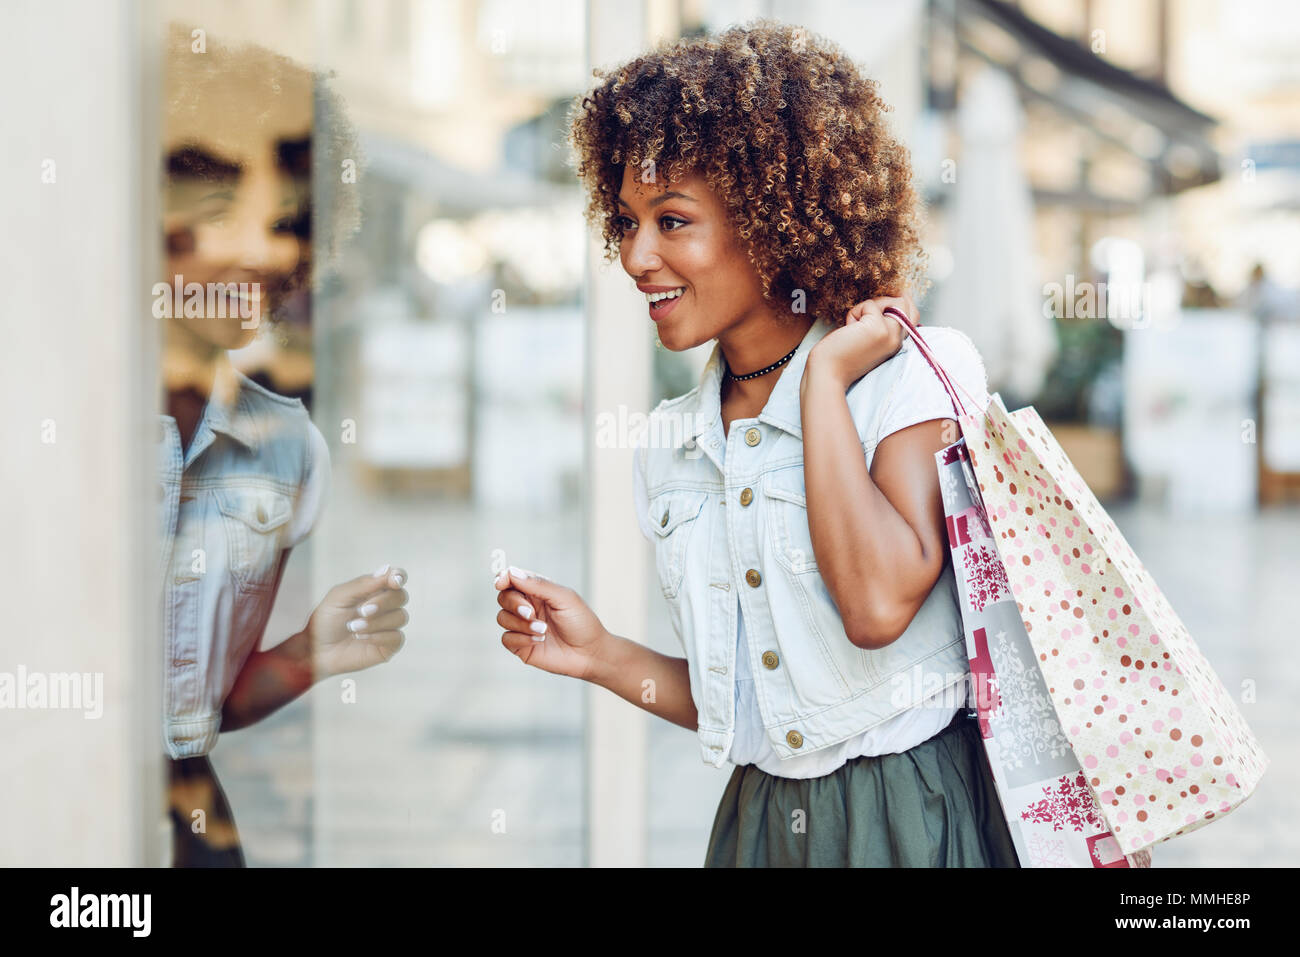 Junge schwarze Frau vor einem Schaufenster in einer Einkaufsstraße. Afrikanisches Mädchen mit Afro Frisur legere Kleidung. Stockfoto